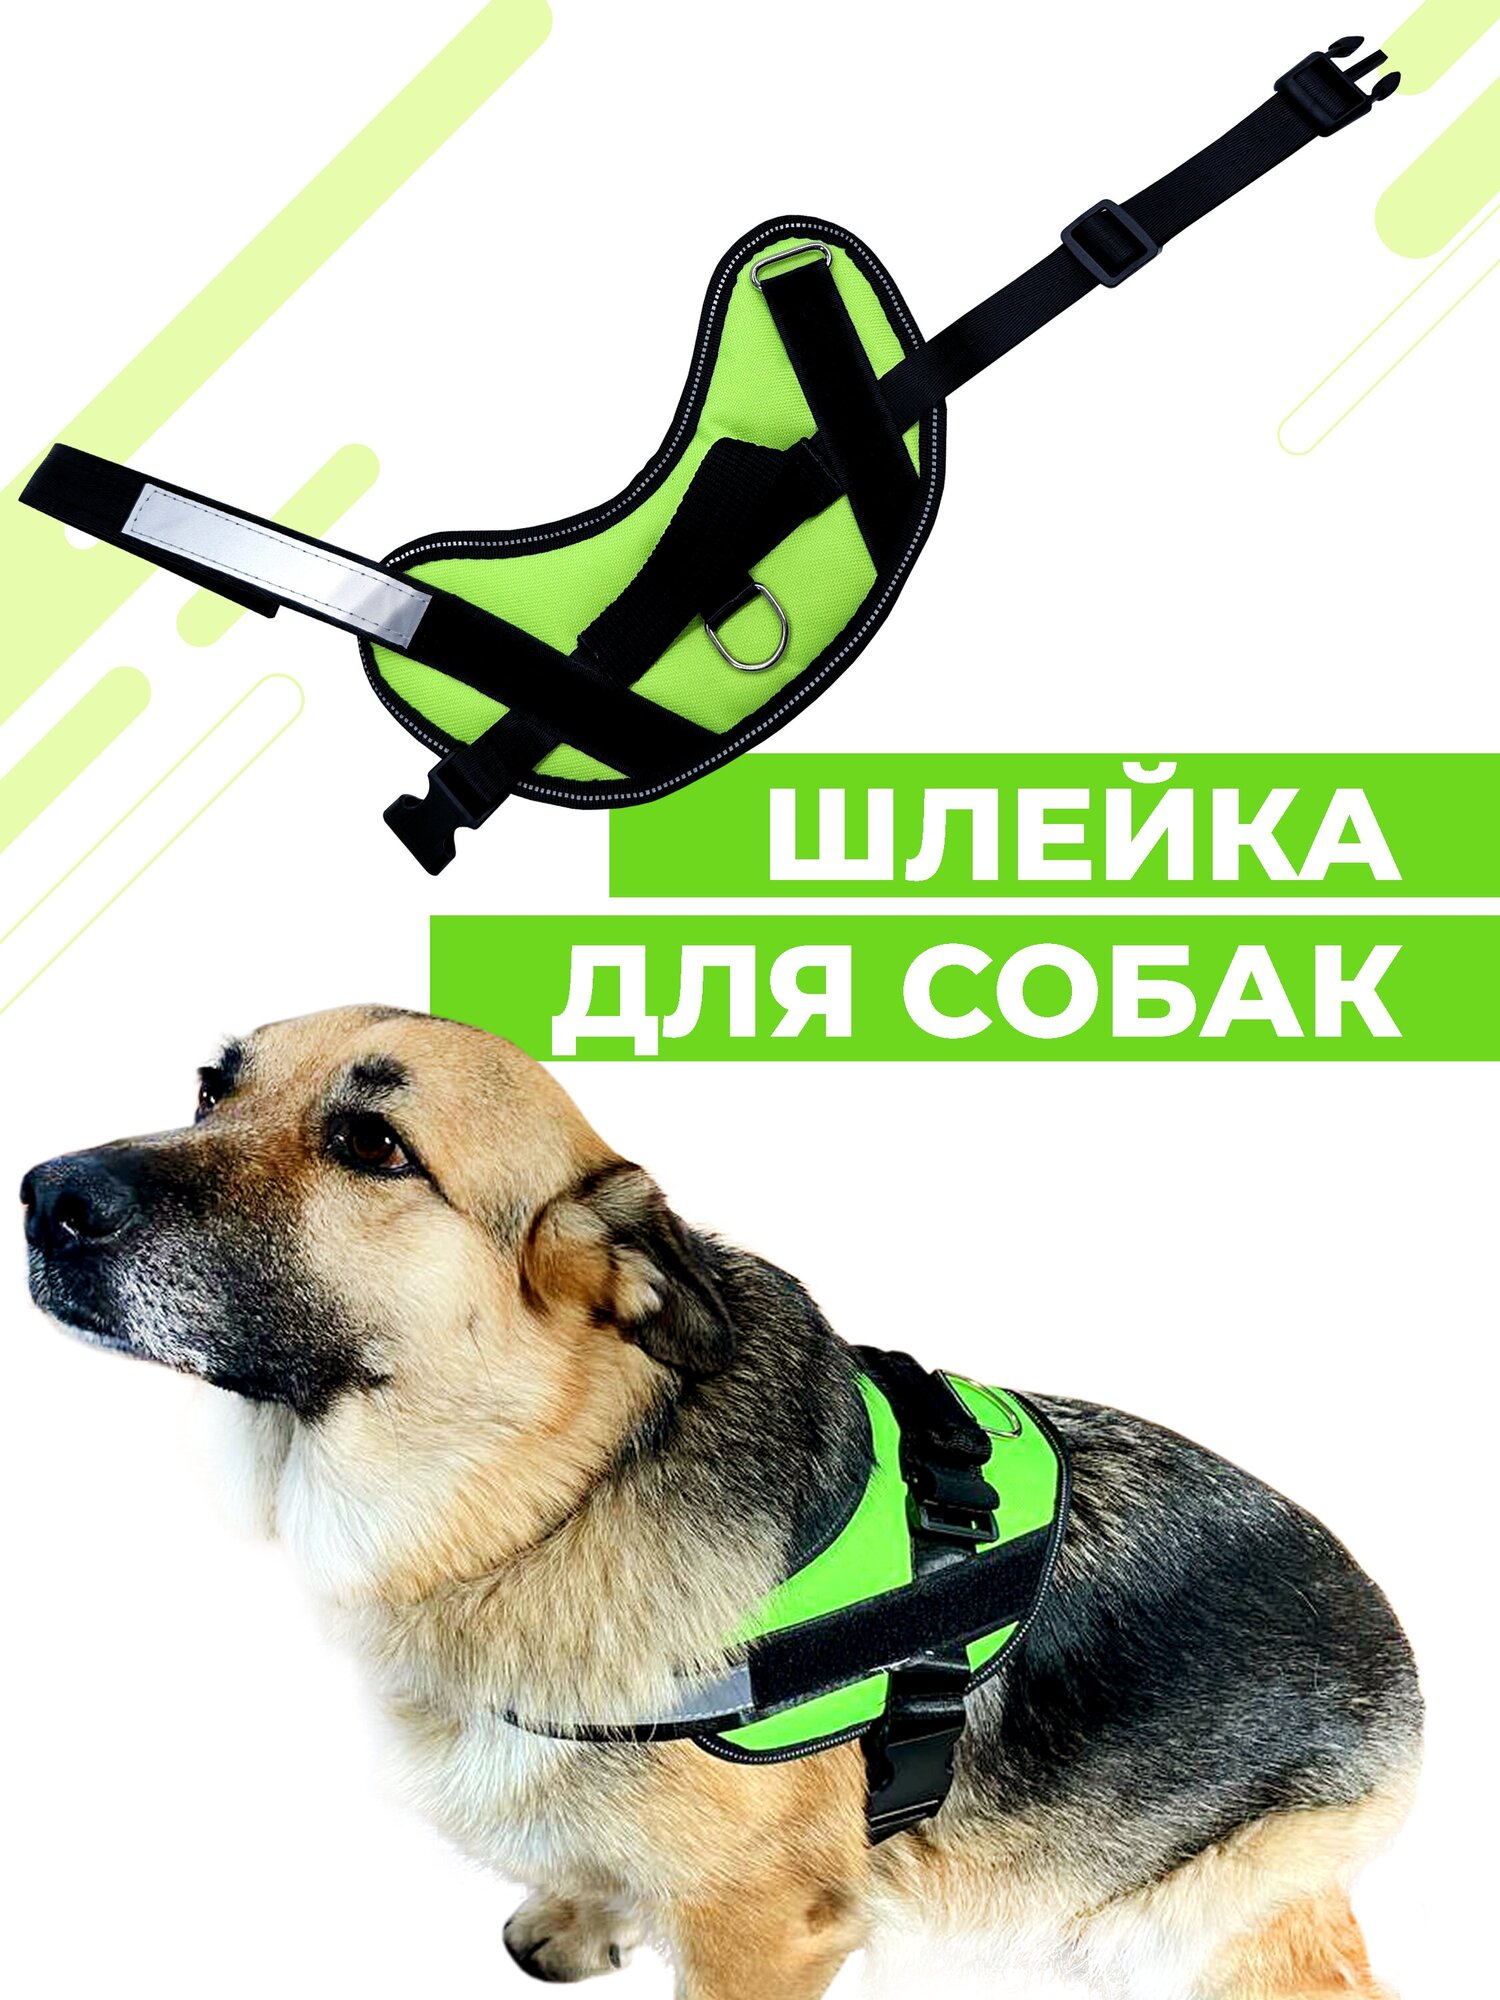 Шлейка для собак Boomshakalaka, со светоотражающим ремнем, размер XS(обхват 41-52 см), вес до 7 кг, цвет зеленый